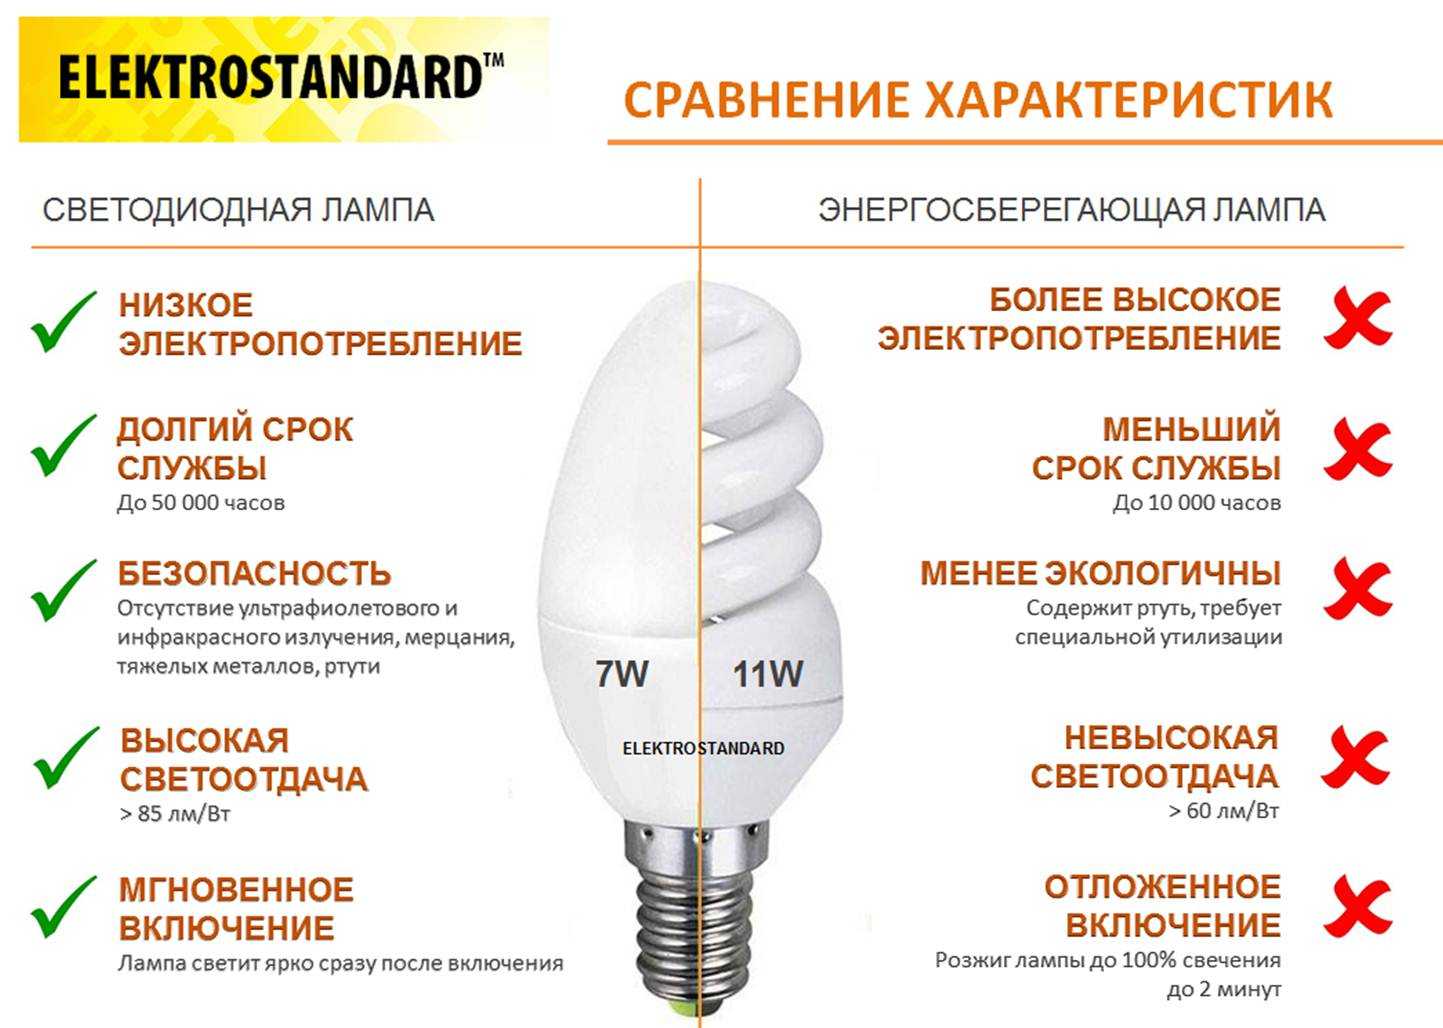 Сравнение мощности светодиодных ламп, клл и ламп накаливания